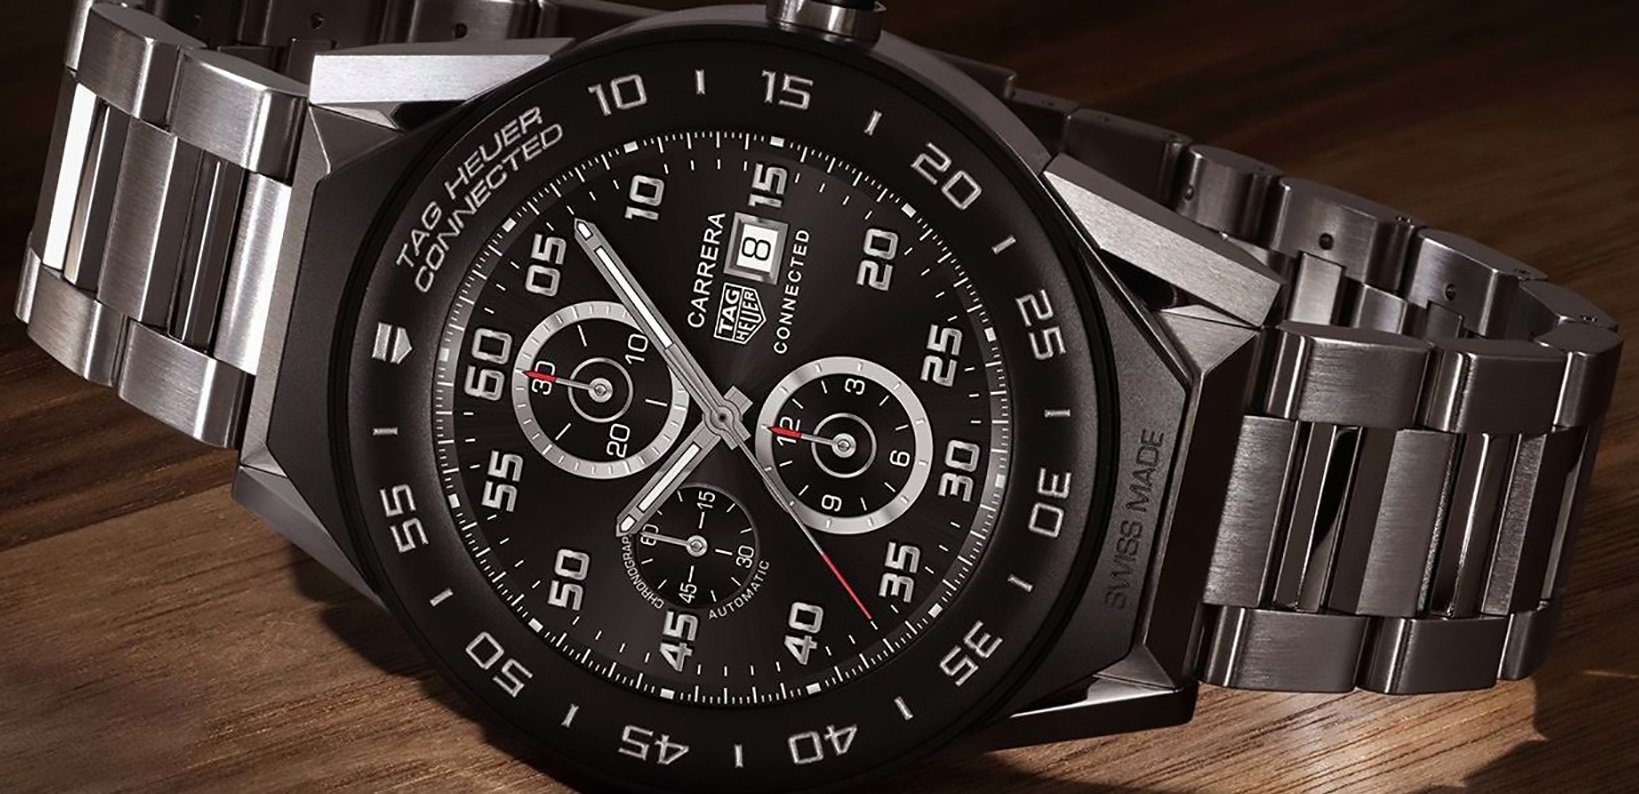 Νέα έκδοση 41mm για το smartwatch της TAG Heuer, Connected Modular, που κοστίζει €1100